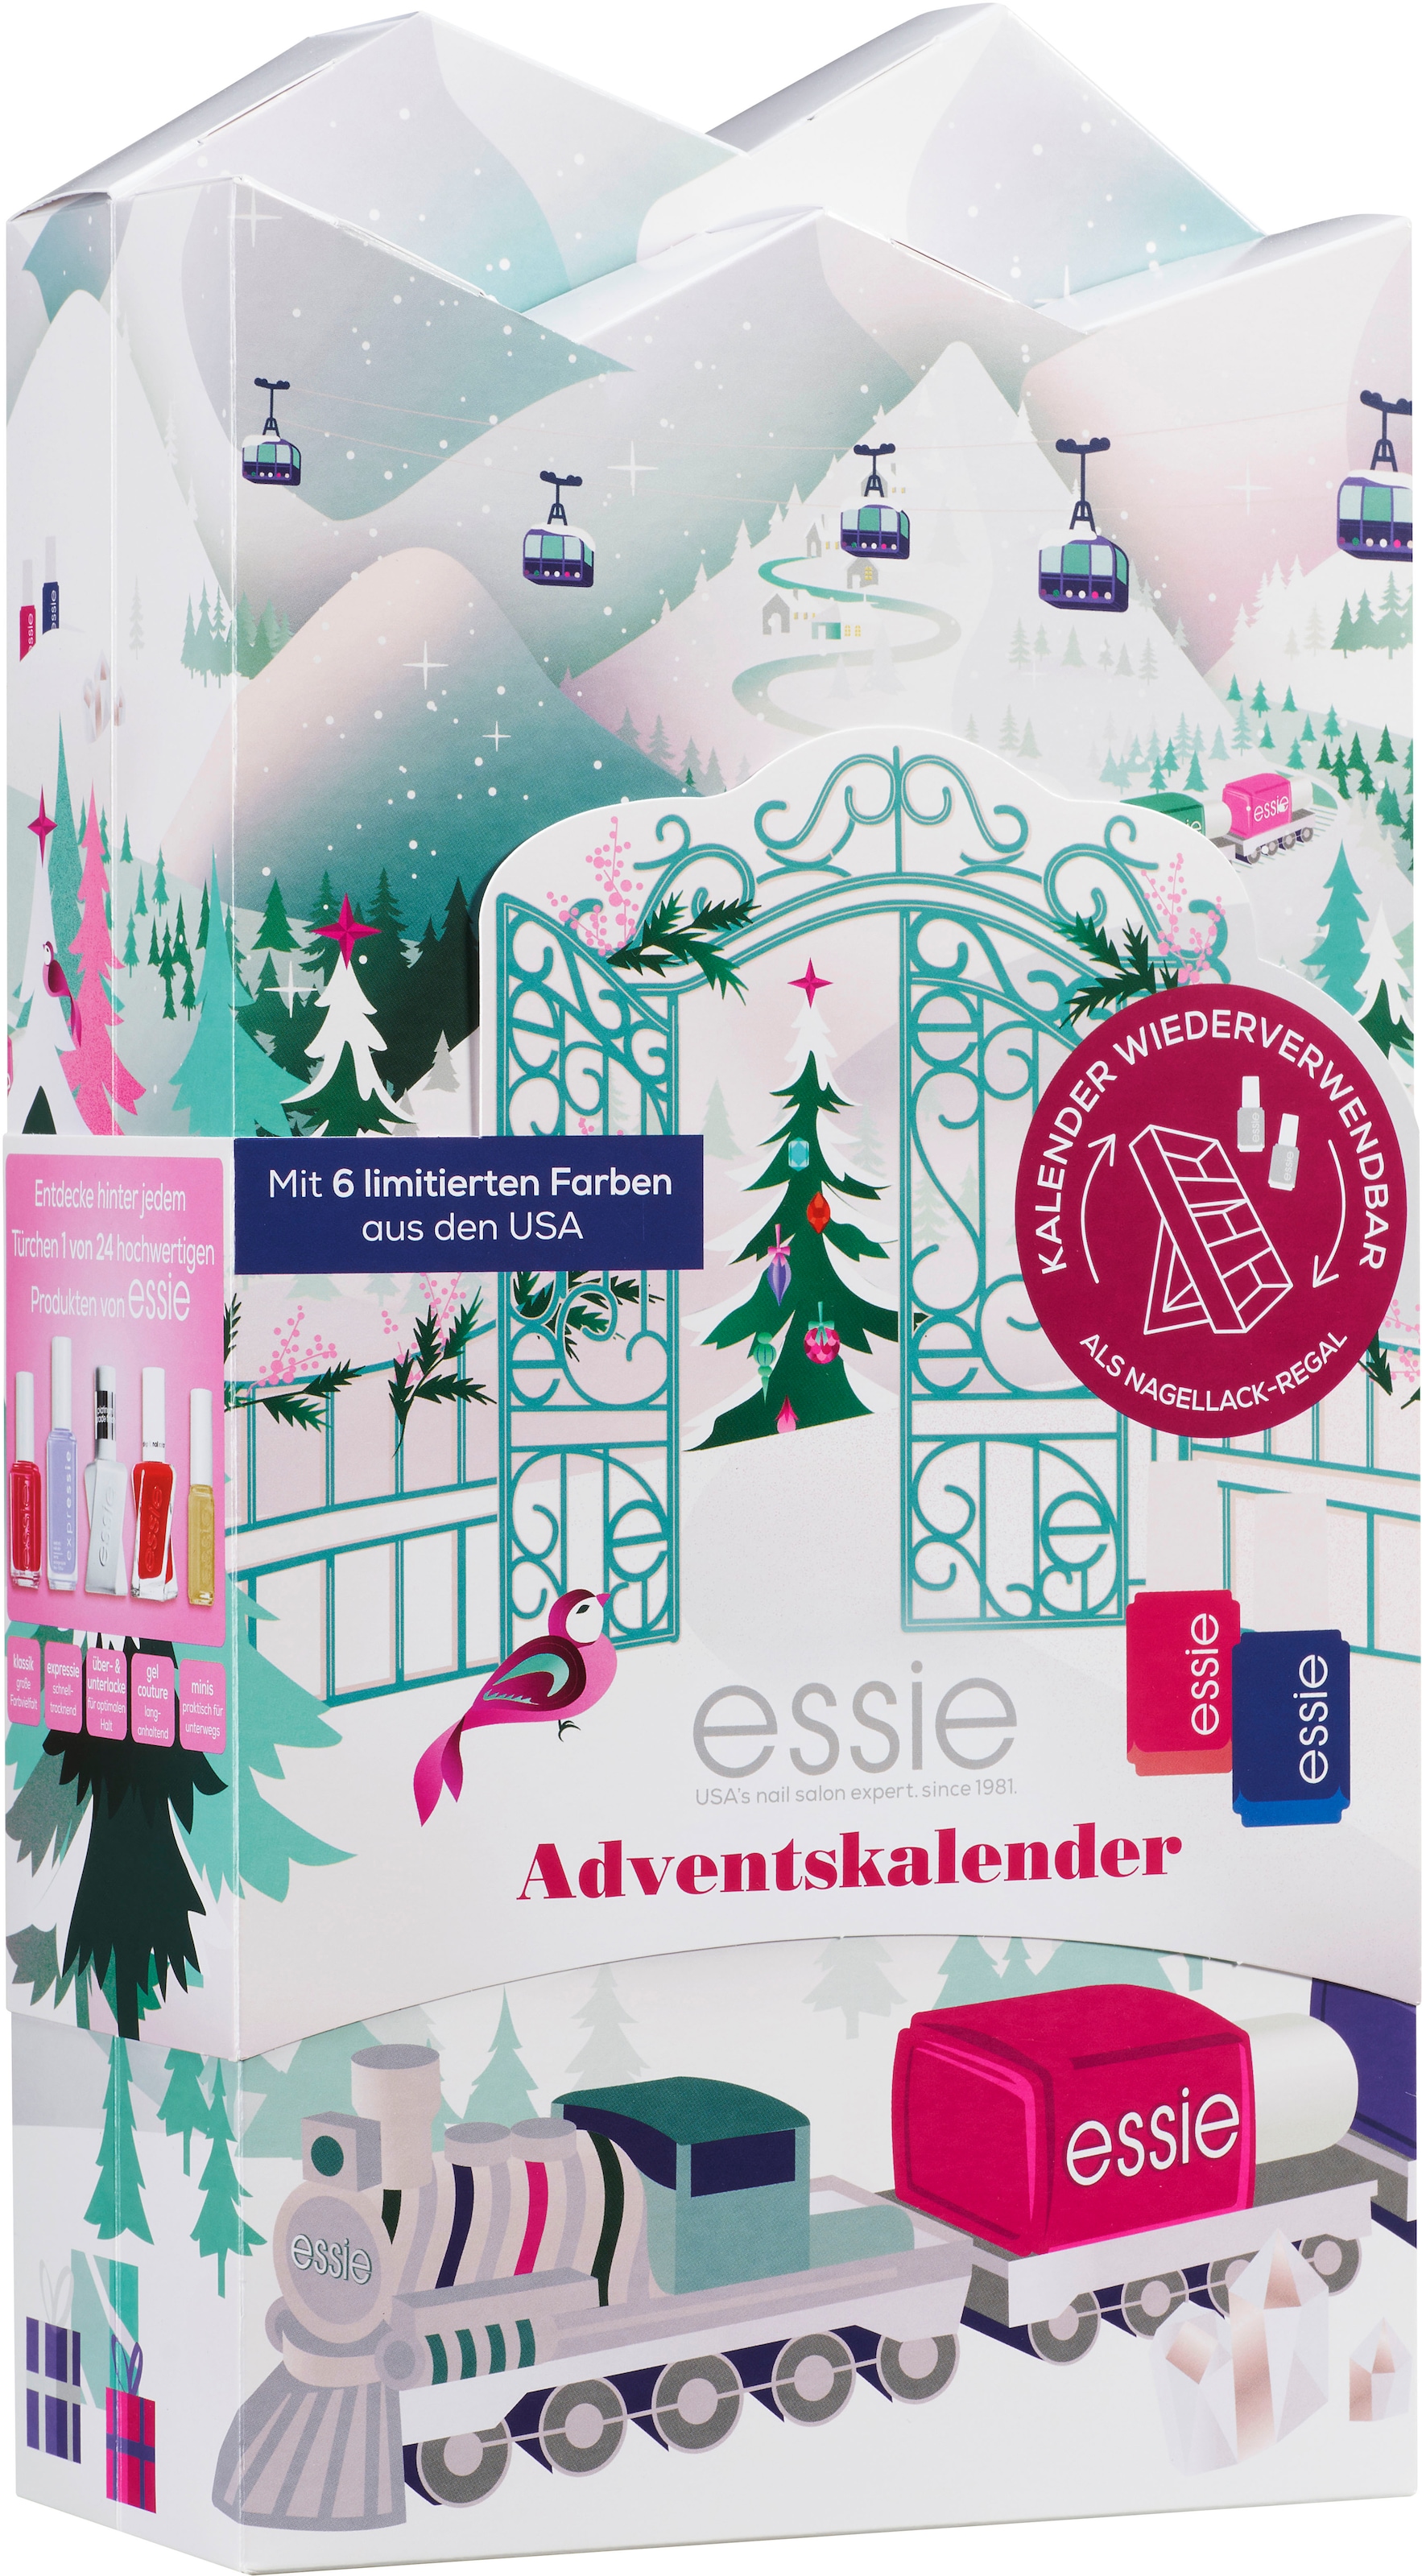 [Originalprodukt aus Übersee] essie Adventskalender »Nagellack-Set« im Online-Shop kaufen